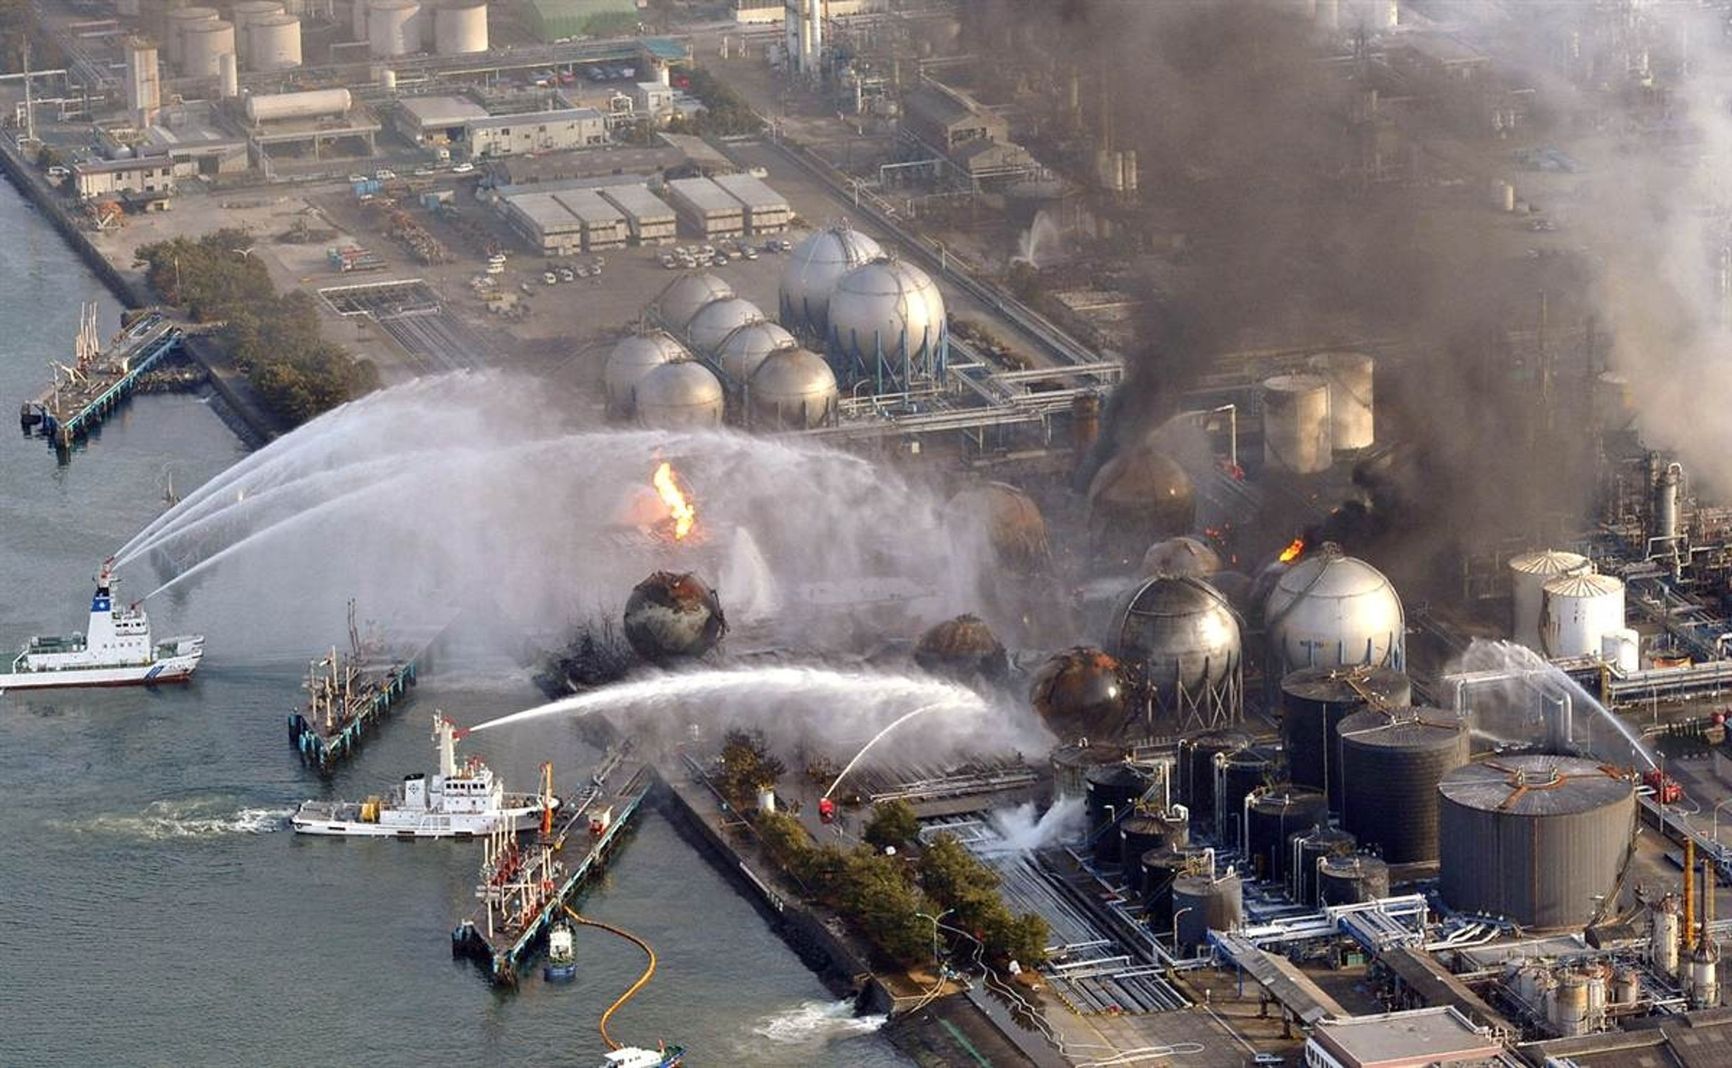 The Fukushima disaster, 2011